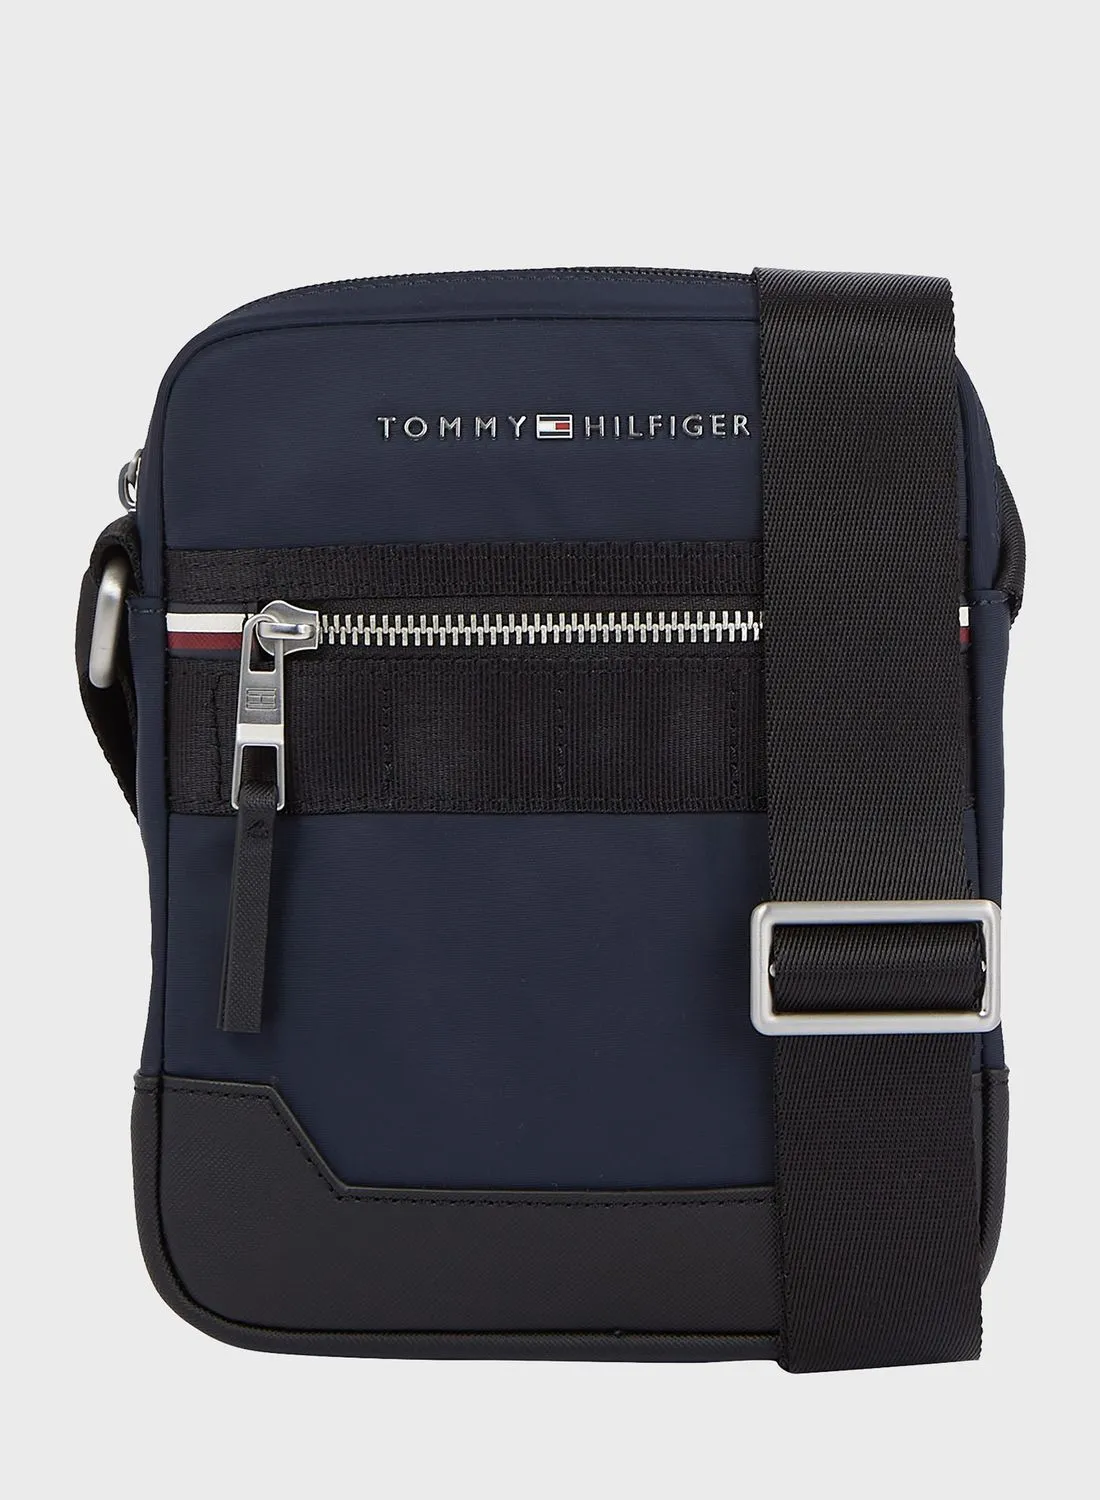 حقيبة كروس بشعار تومي هيلفيغر